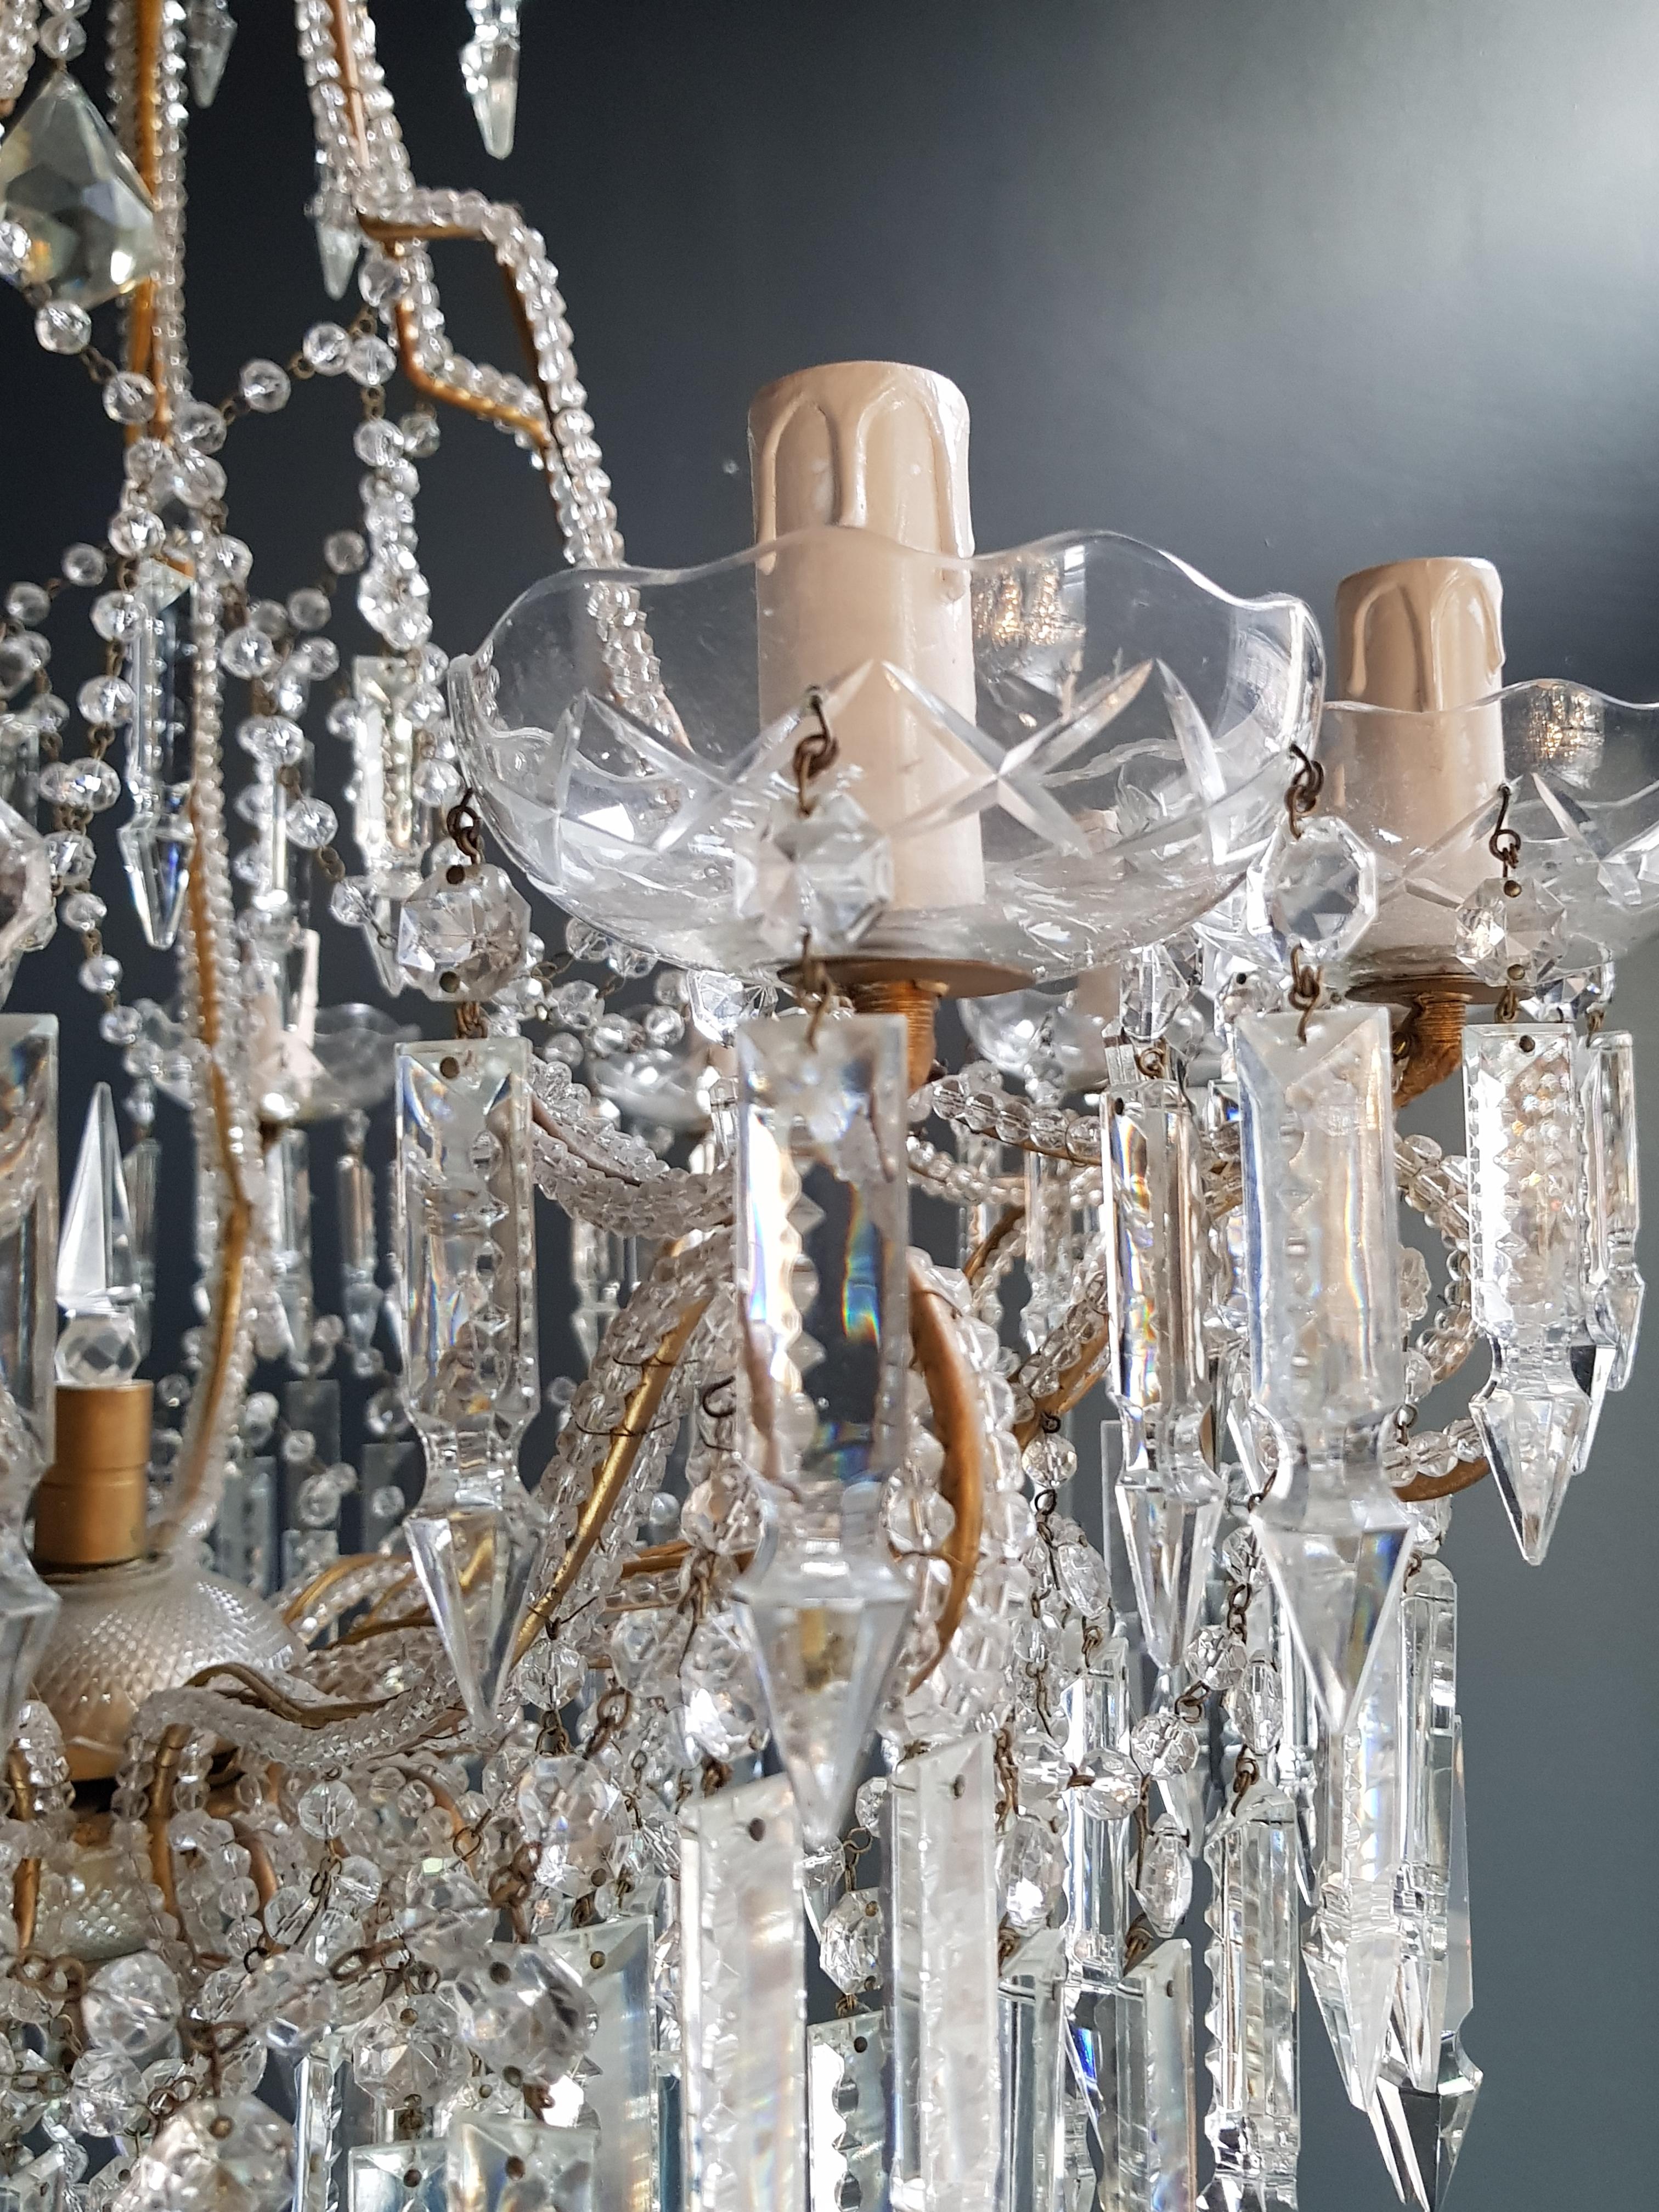 Italian Beaded Crystal Chandelier Antique Ceiling Lamp Lustre Art Nouveau 2 Pieces, Pair